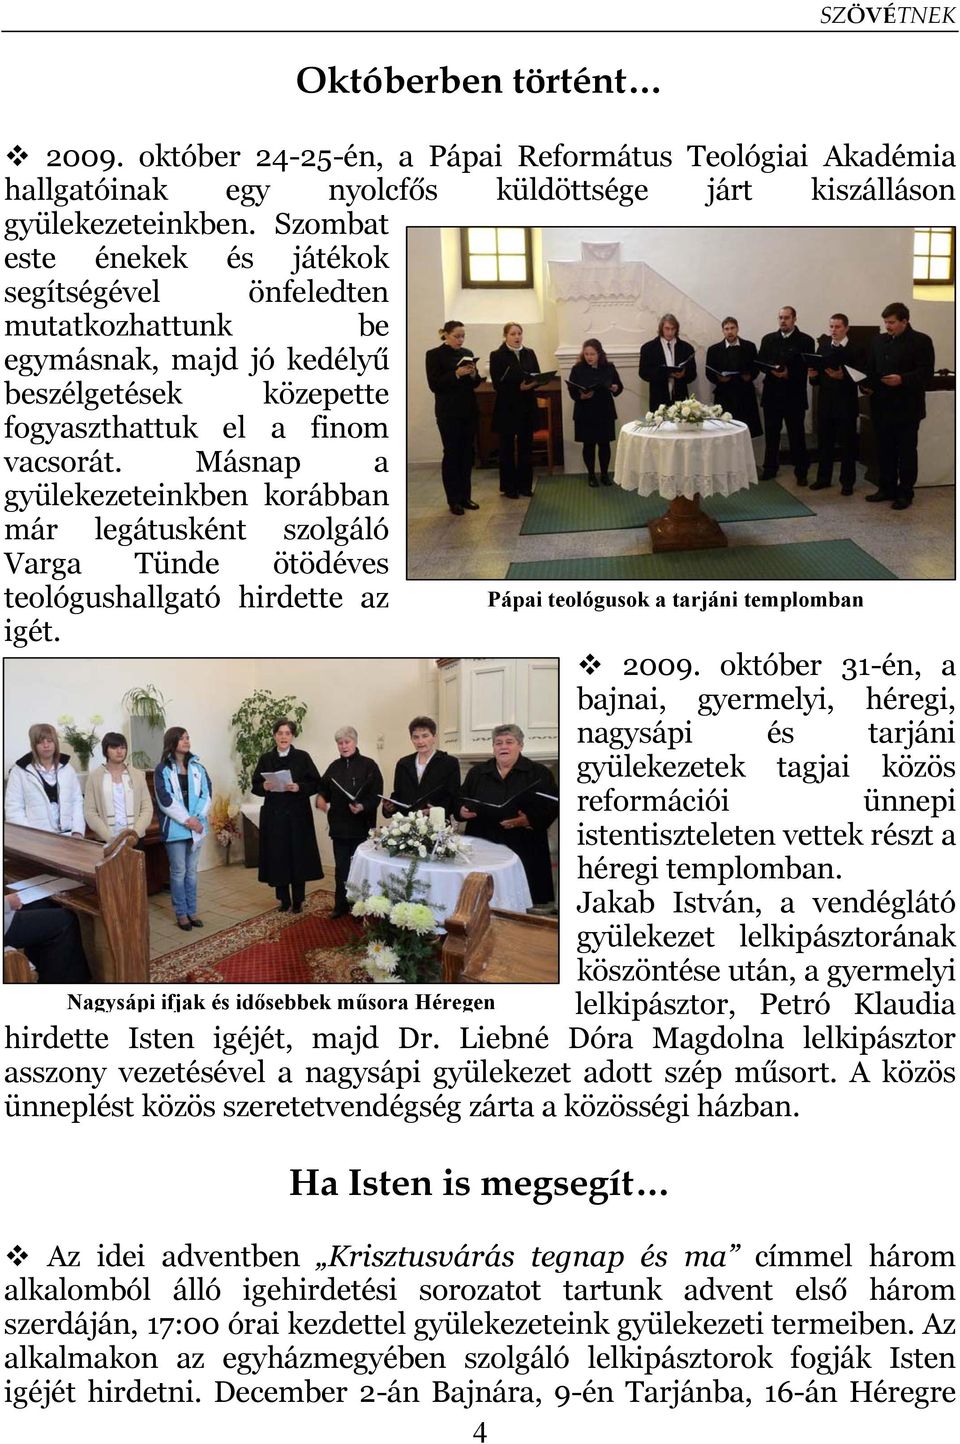 Másnap a gyülekezeteinkben korábban már legátusként szolgáló Varga Tünde ötödéves teológushallgató hirdette az igét.